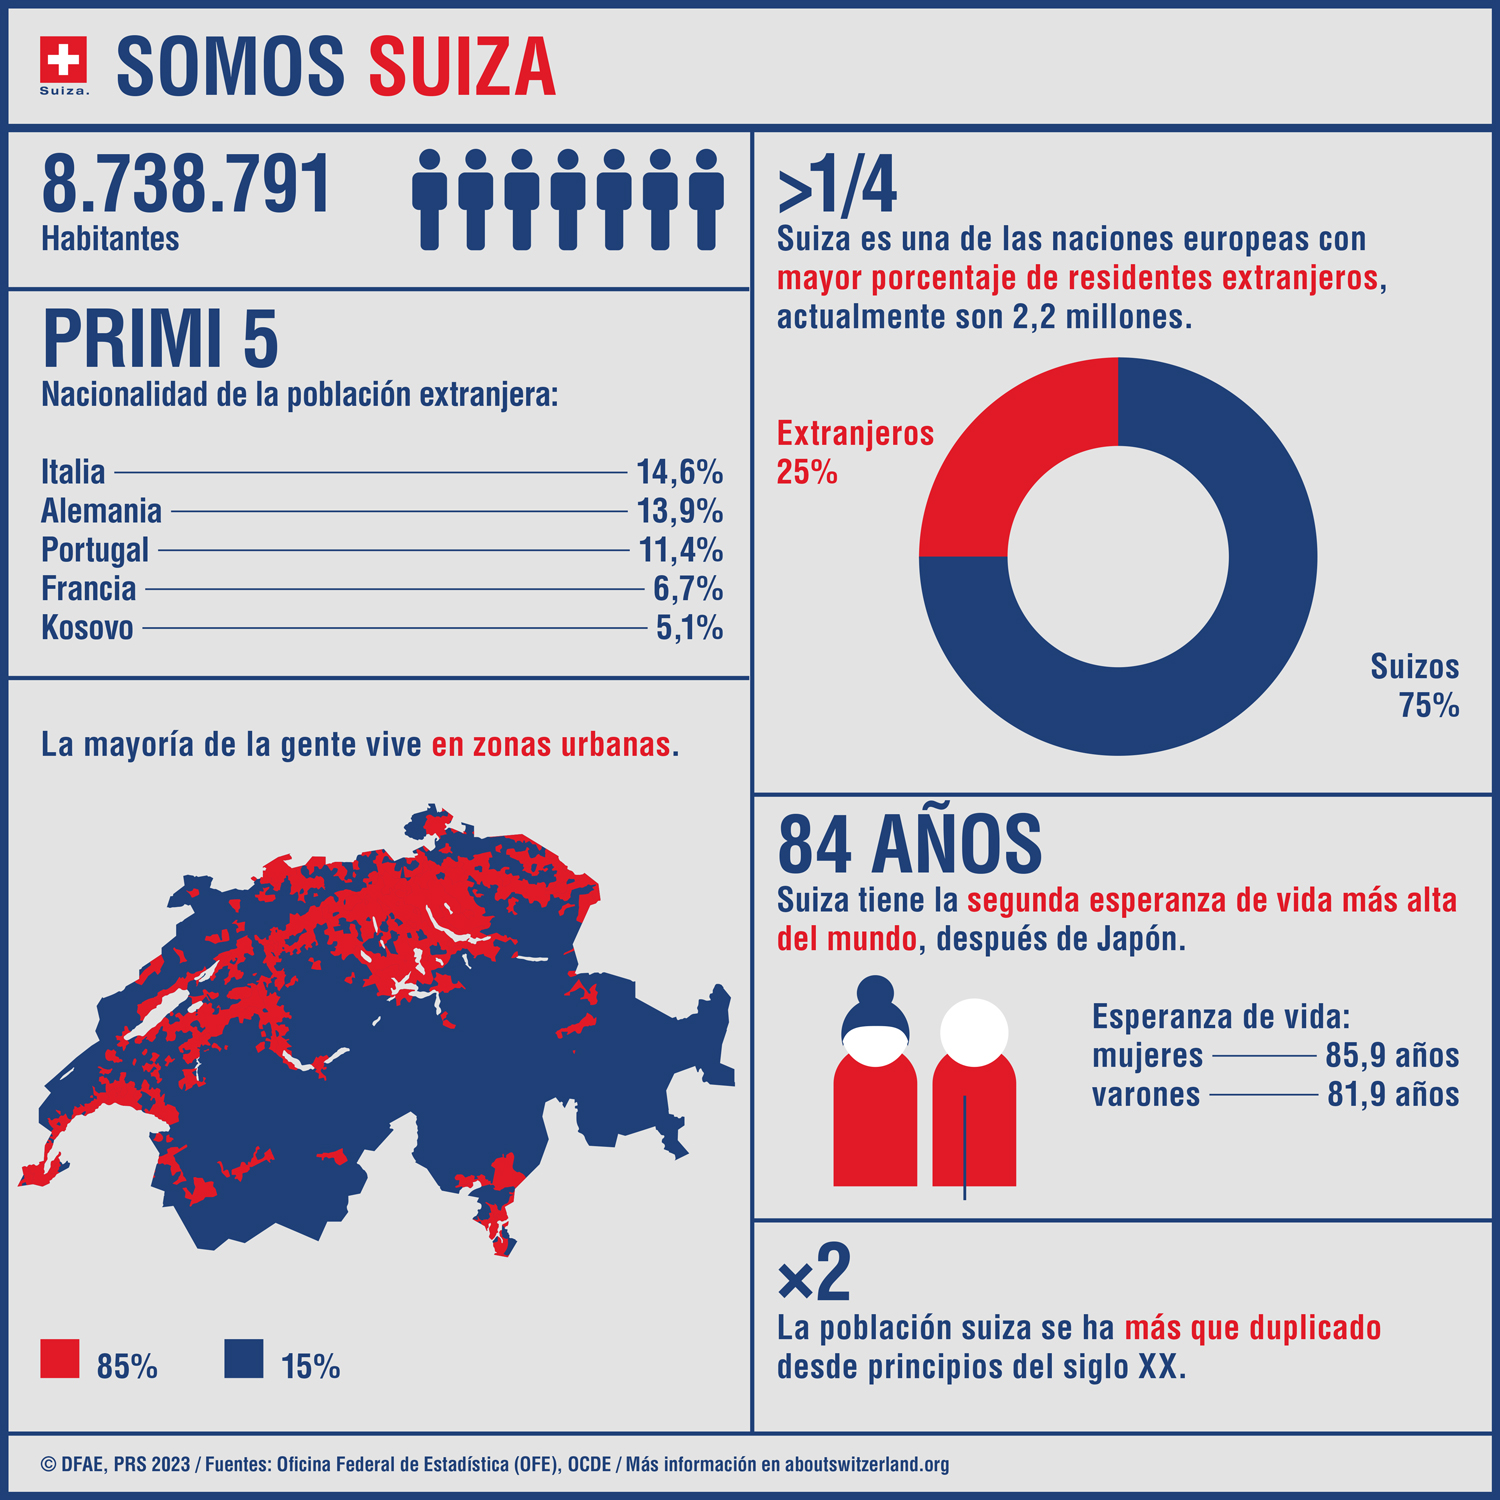 Infografía que muestra las cifras más importantes sobre la población suiza.